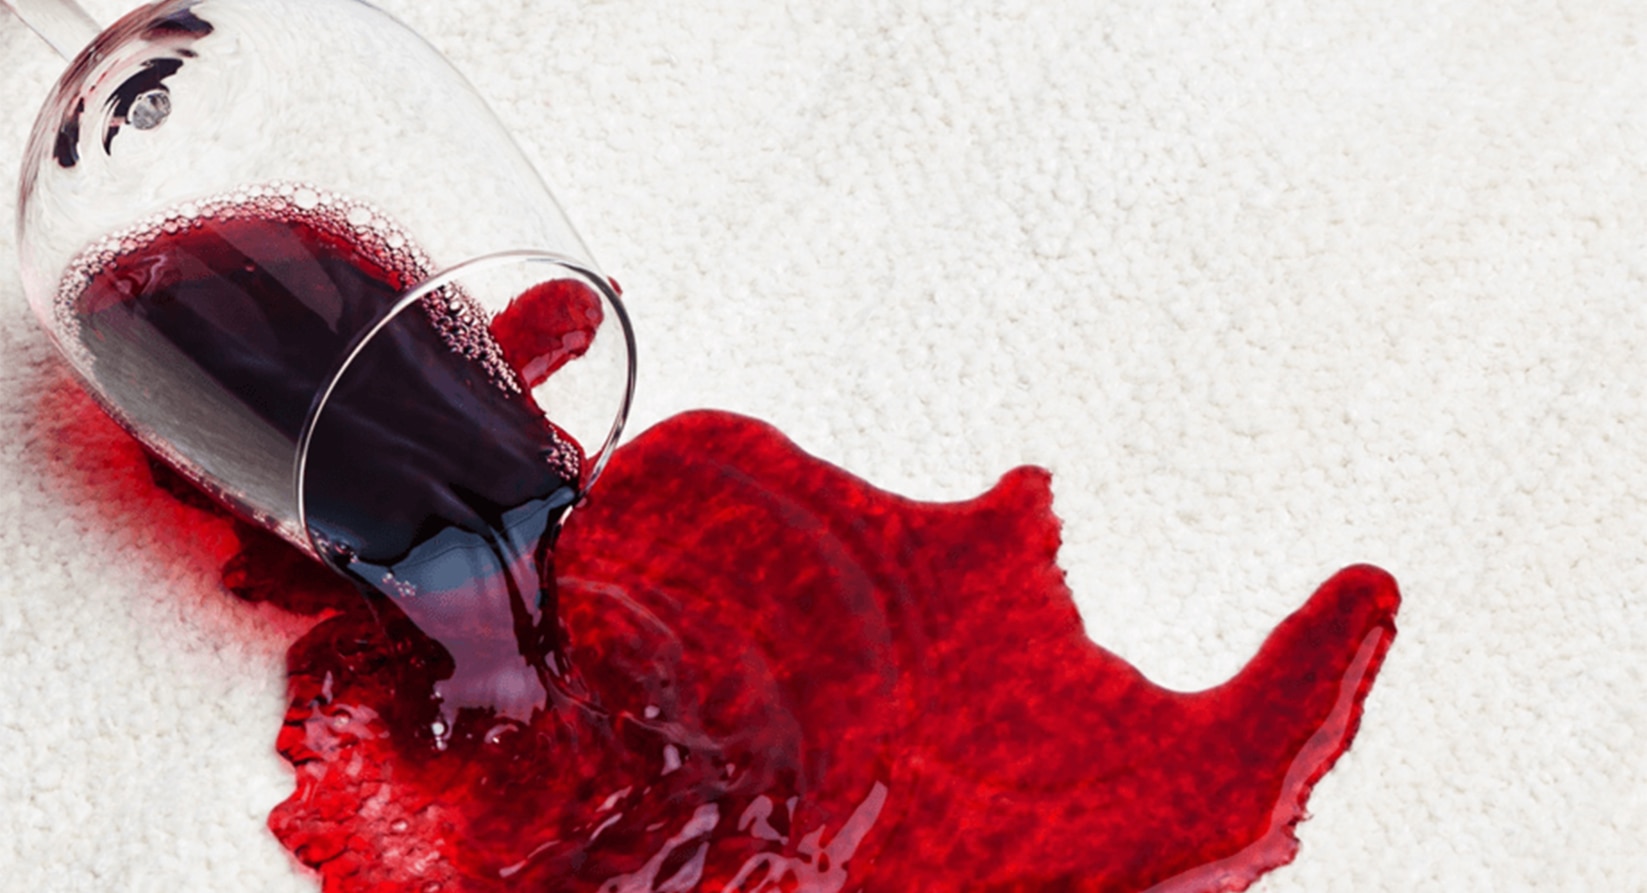 Como limpar um tapete com manchas de vinho tinto? | Cuidado da casa